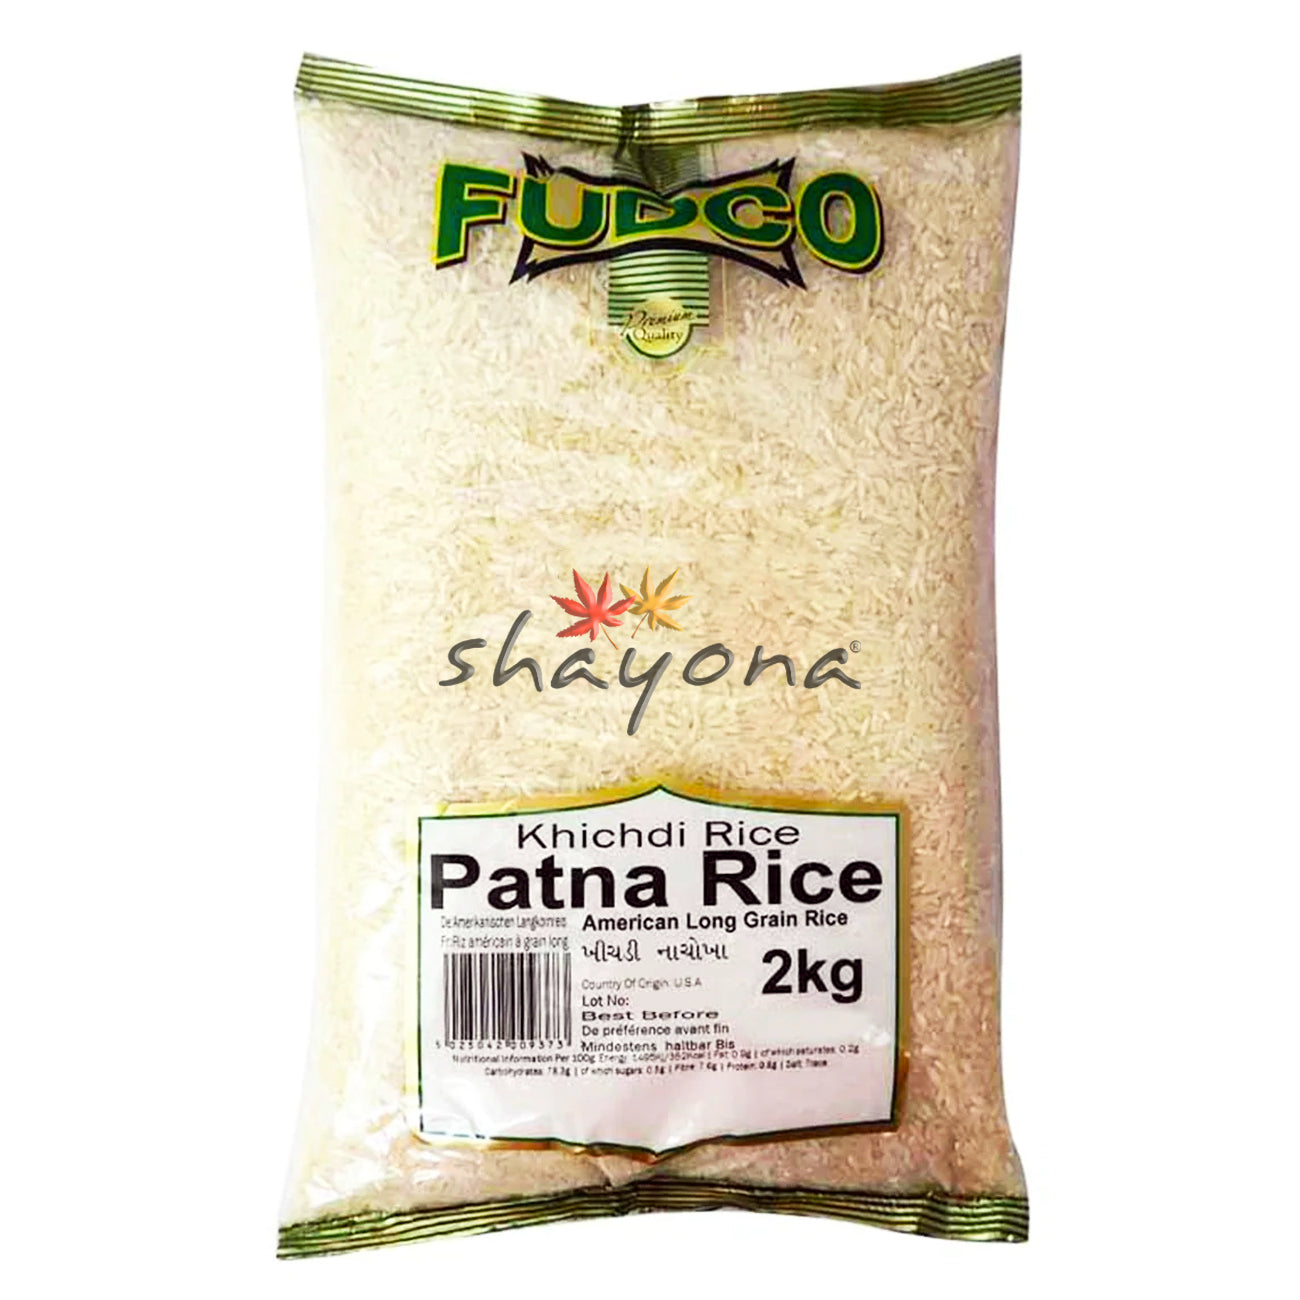 Fudco Khichdi Patna Rice